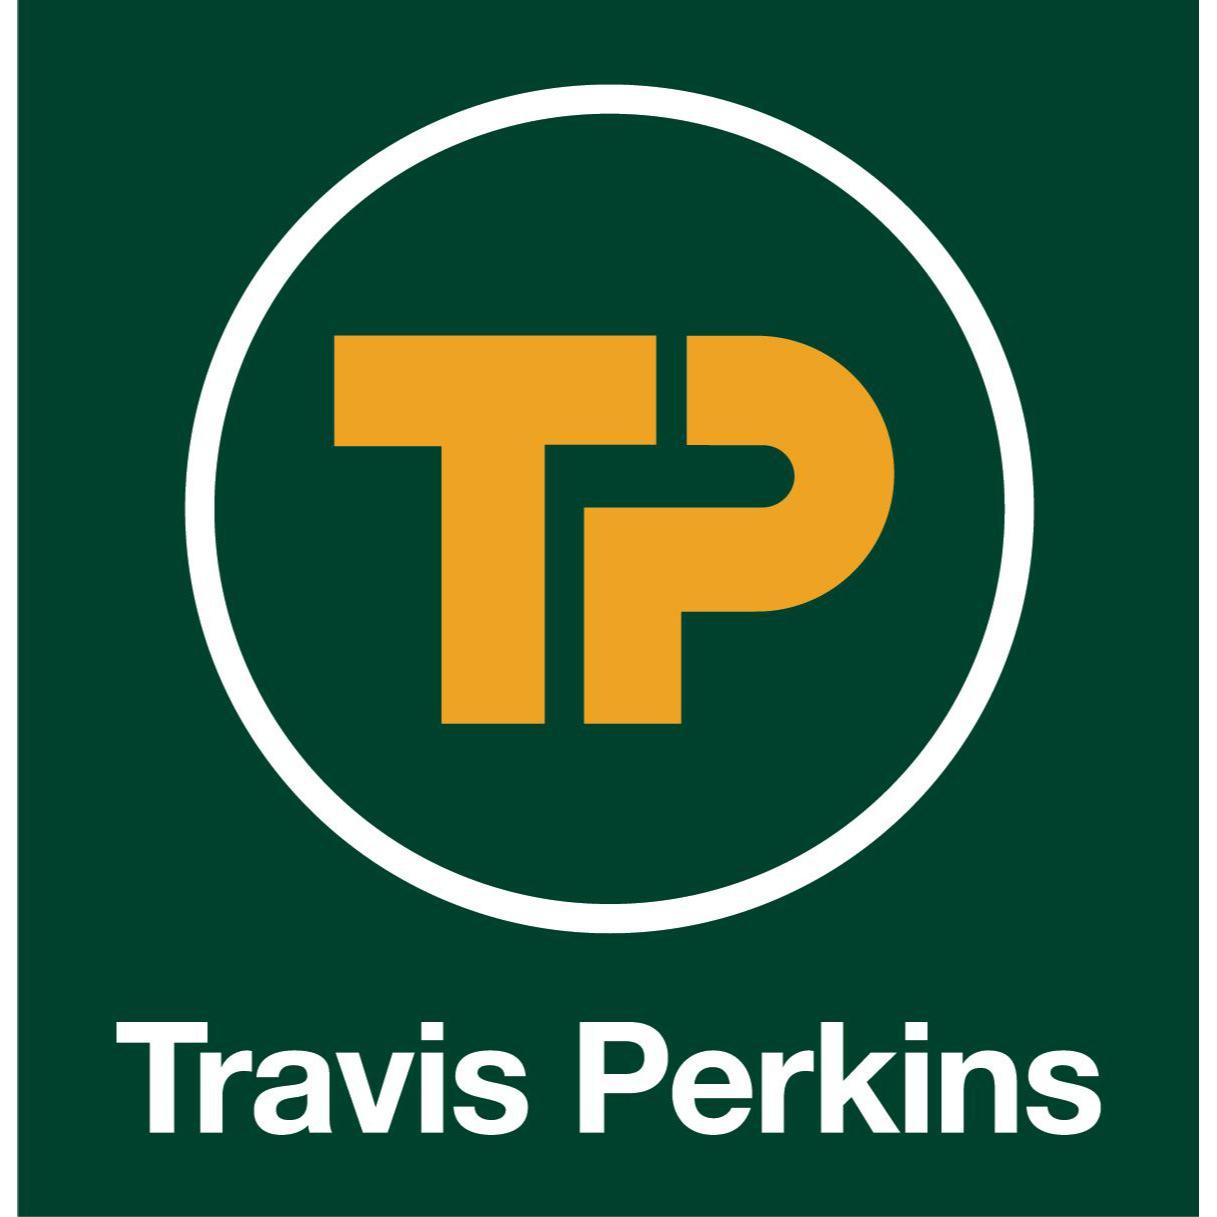 Travis Perkins Travis Perkins Cranbrook 01580 713357